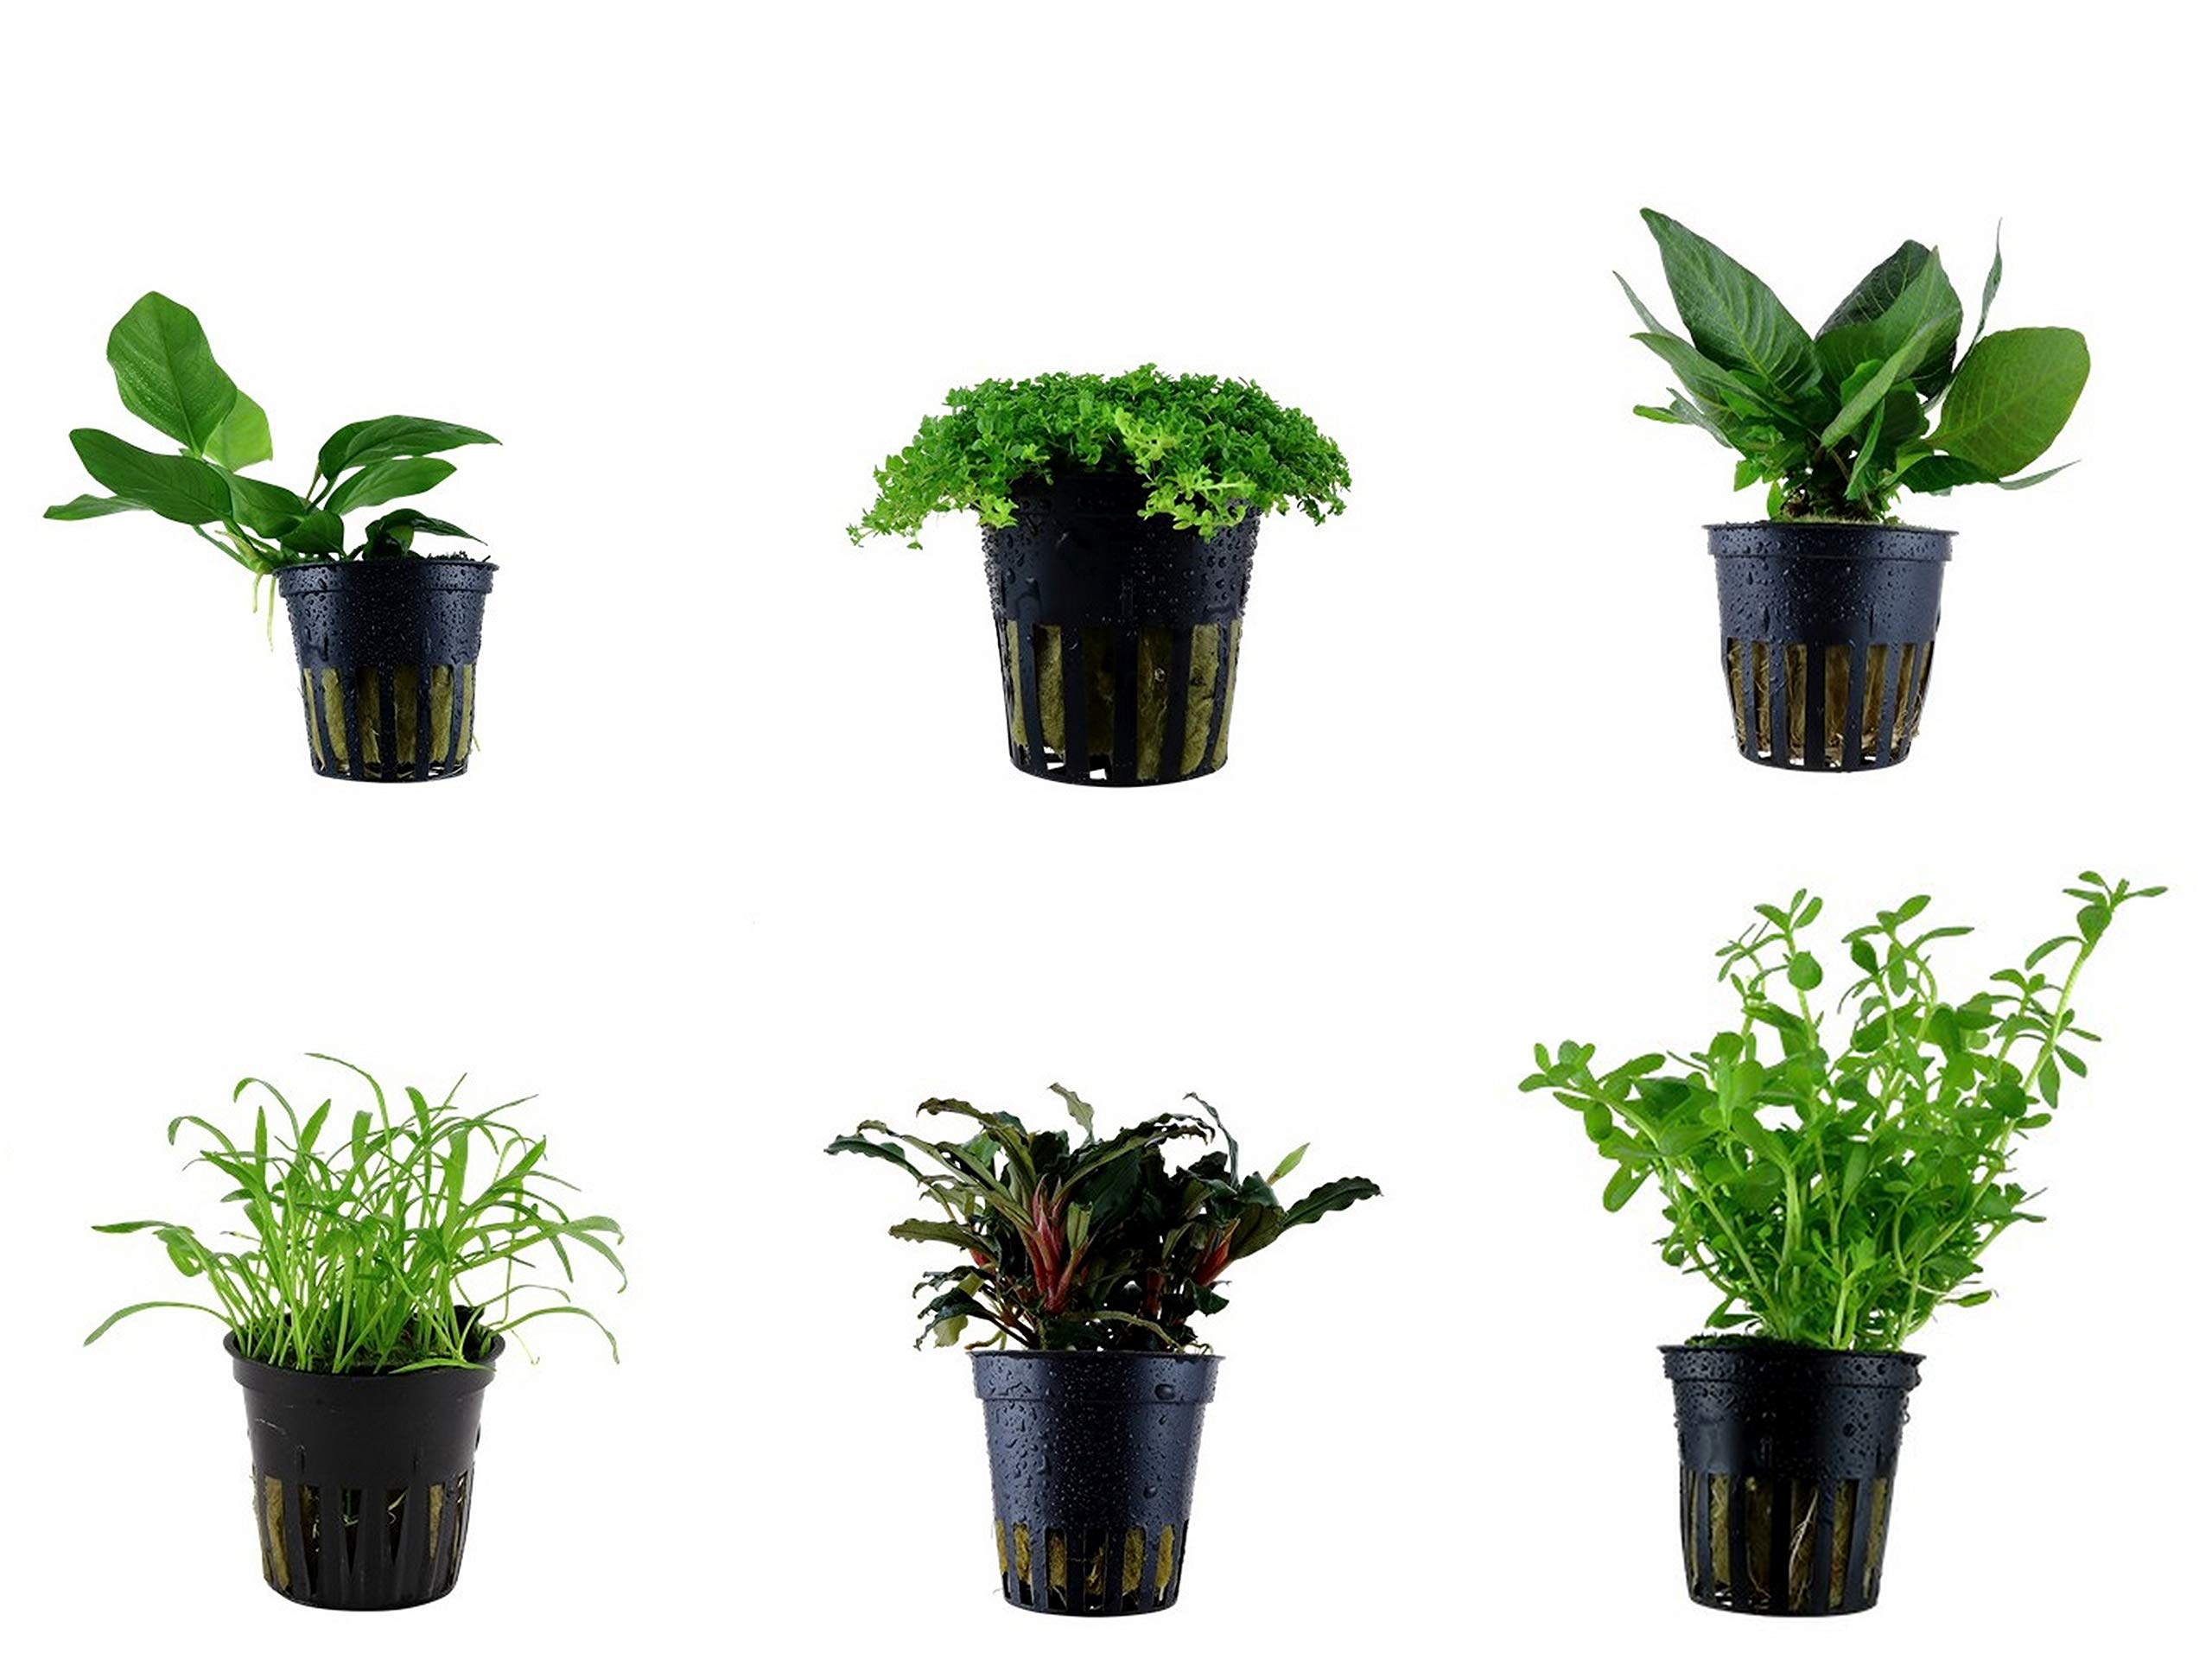 Tropica Vordergrund Set mit 6 Topf Pflanzen Aquariumpflanzenset Nr.19 Wasserpflanzen Aquarium Aquariumpflanzen